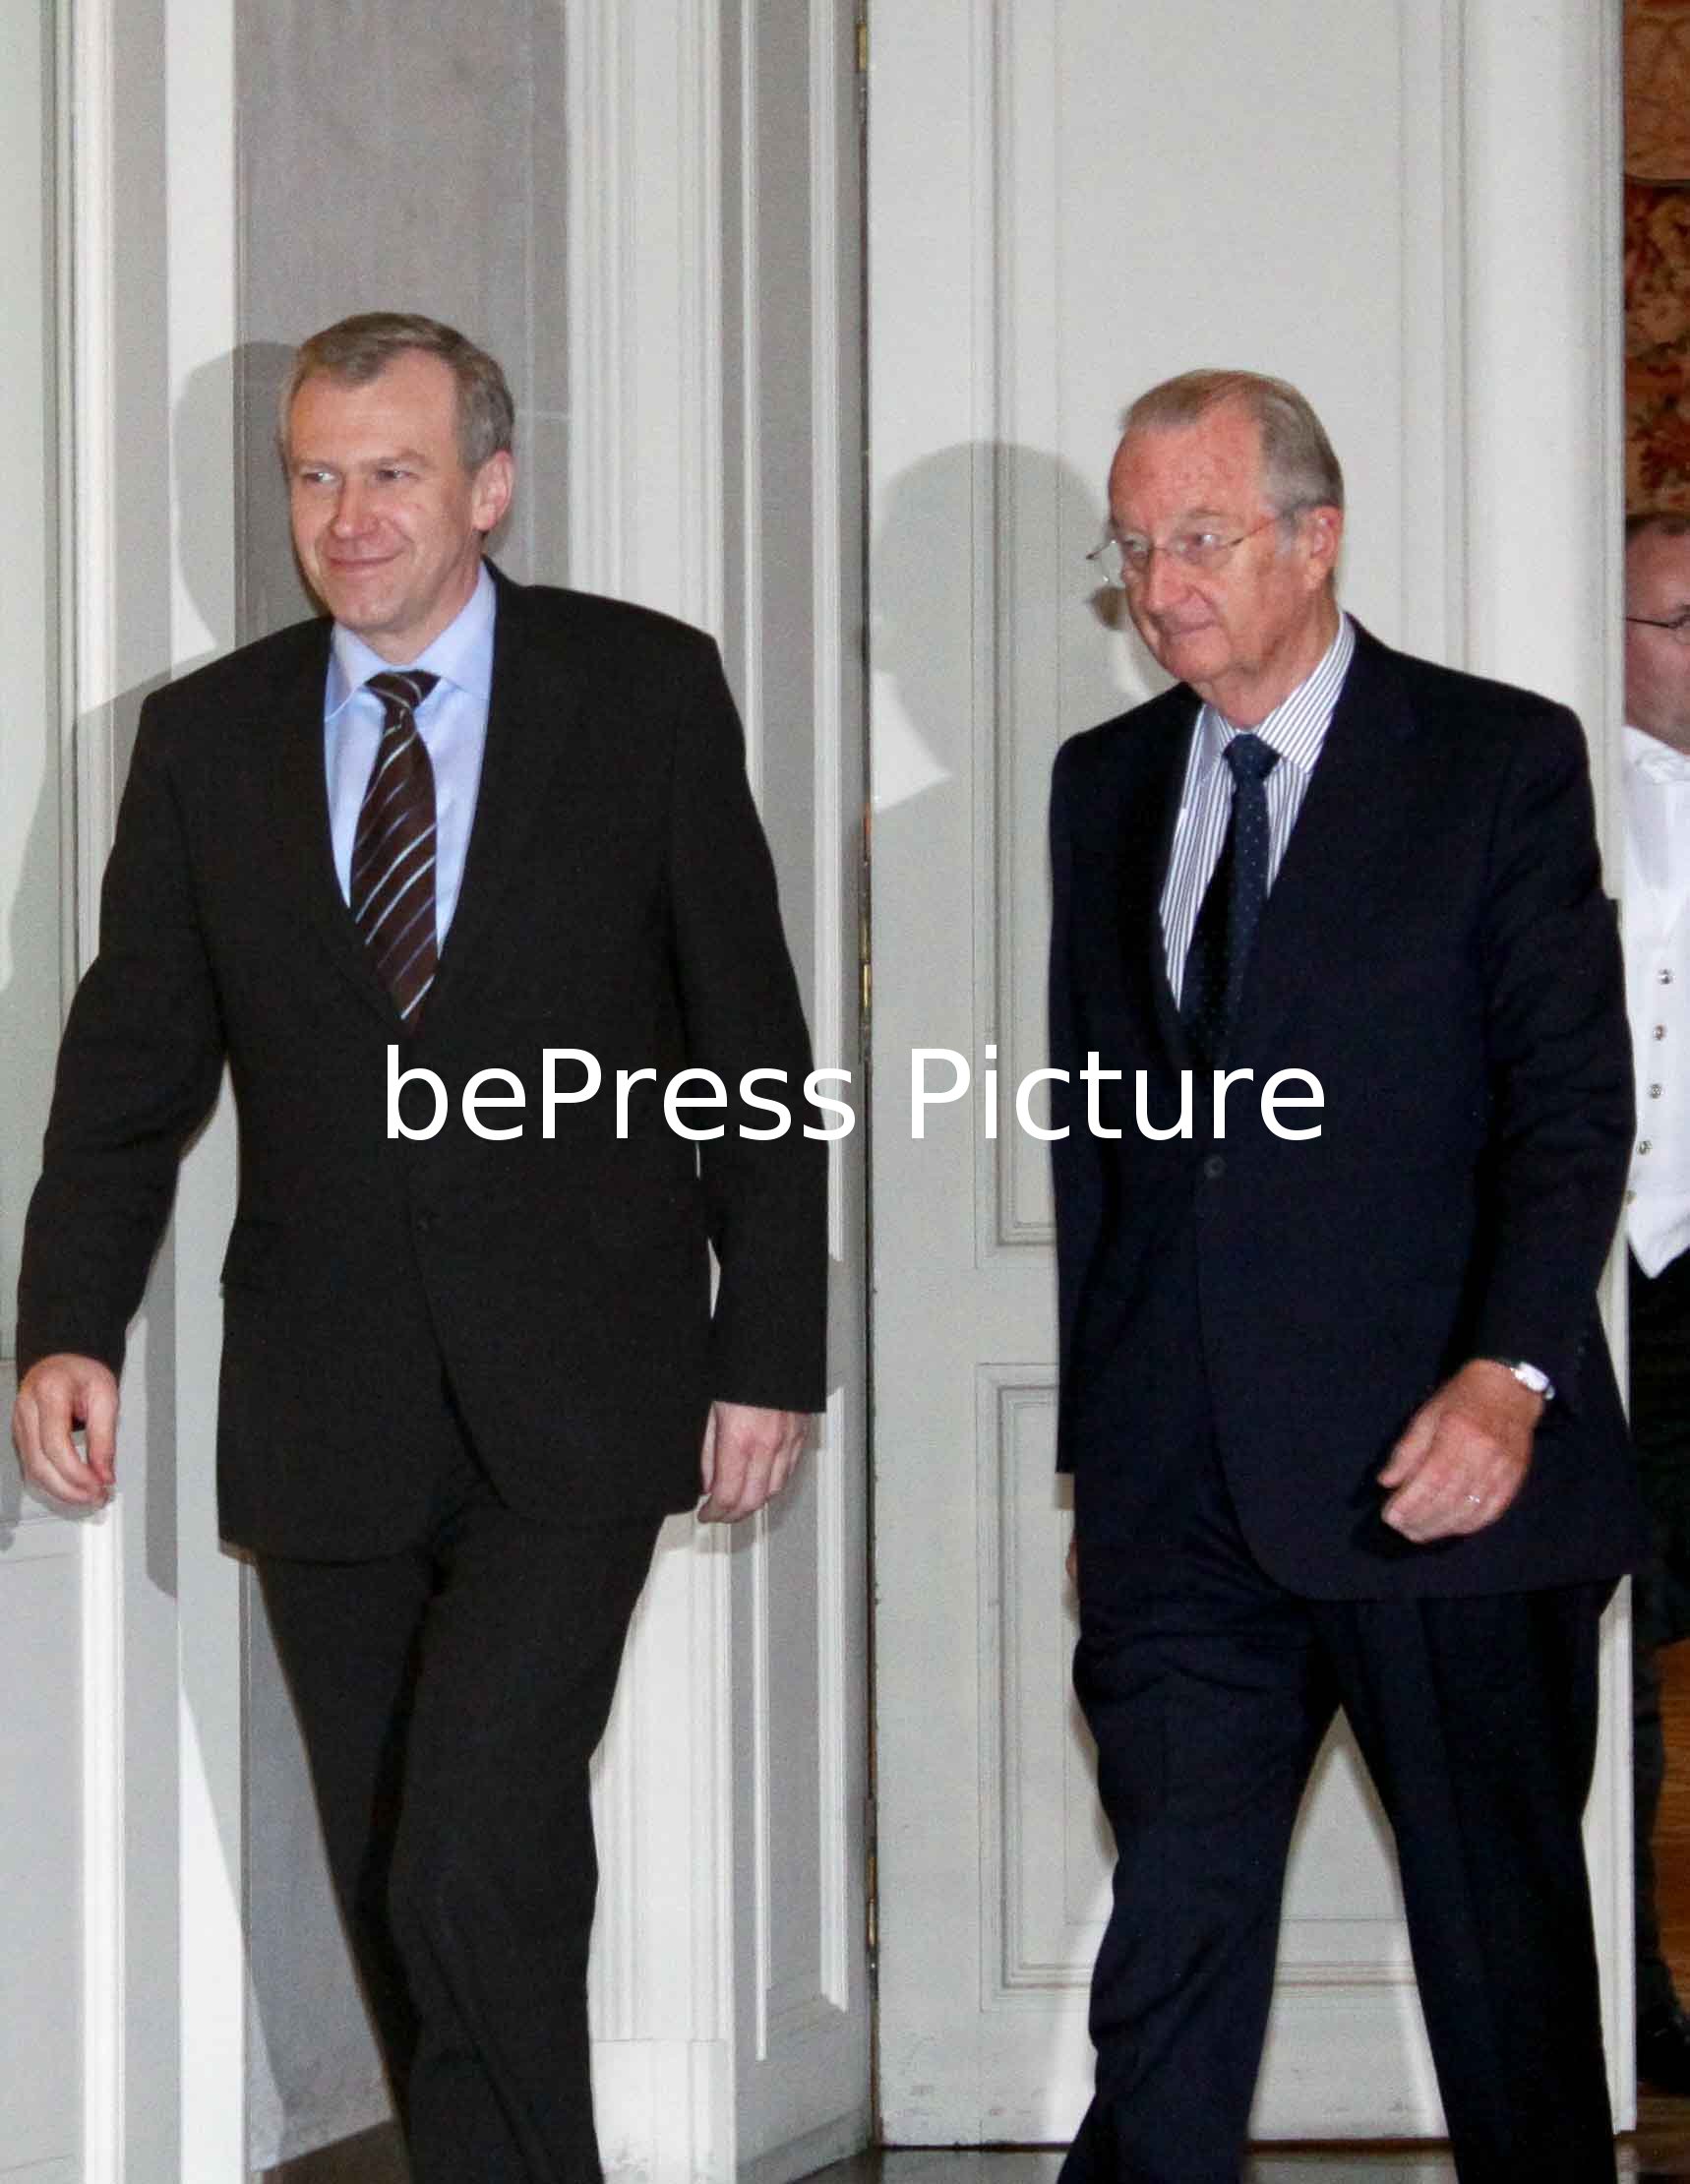 Arrival of the new Prime Minister Yves Leterme CDV with Roil Albert II | Arrive du nouveau premier Ministre Yves Leterme CDV avec le Roil Albert II